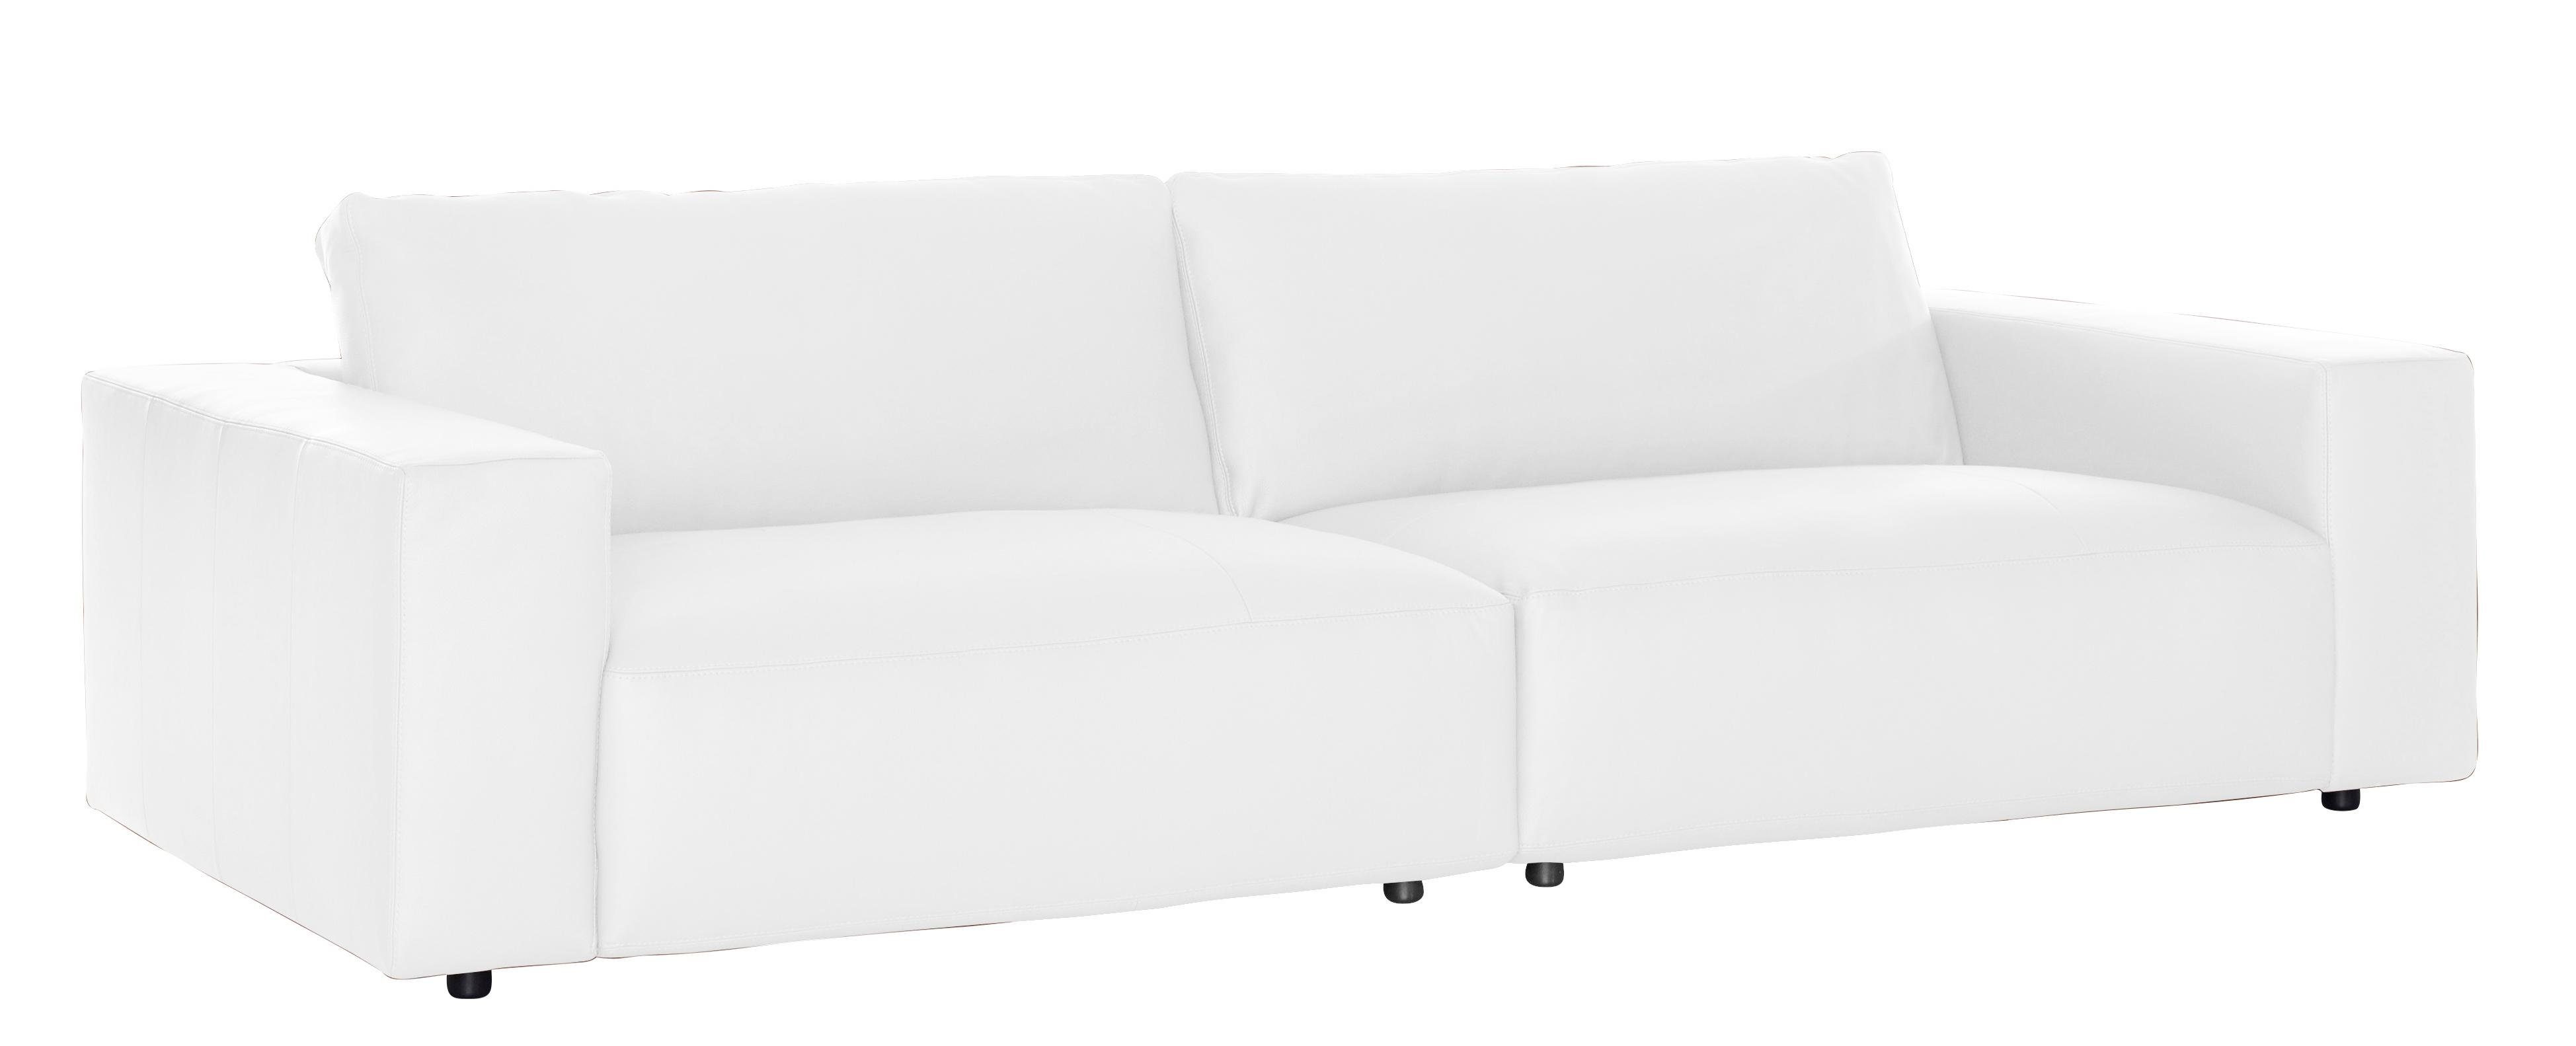 Musterring LUCIA, und vielen unterschiedlichen Nähten, Qualitäten by in 4 Big-Sofa 3-Sitzer branded M GALLERY